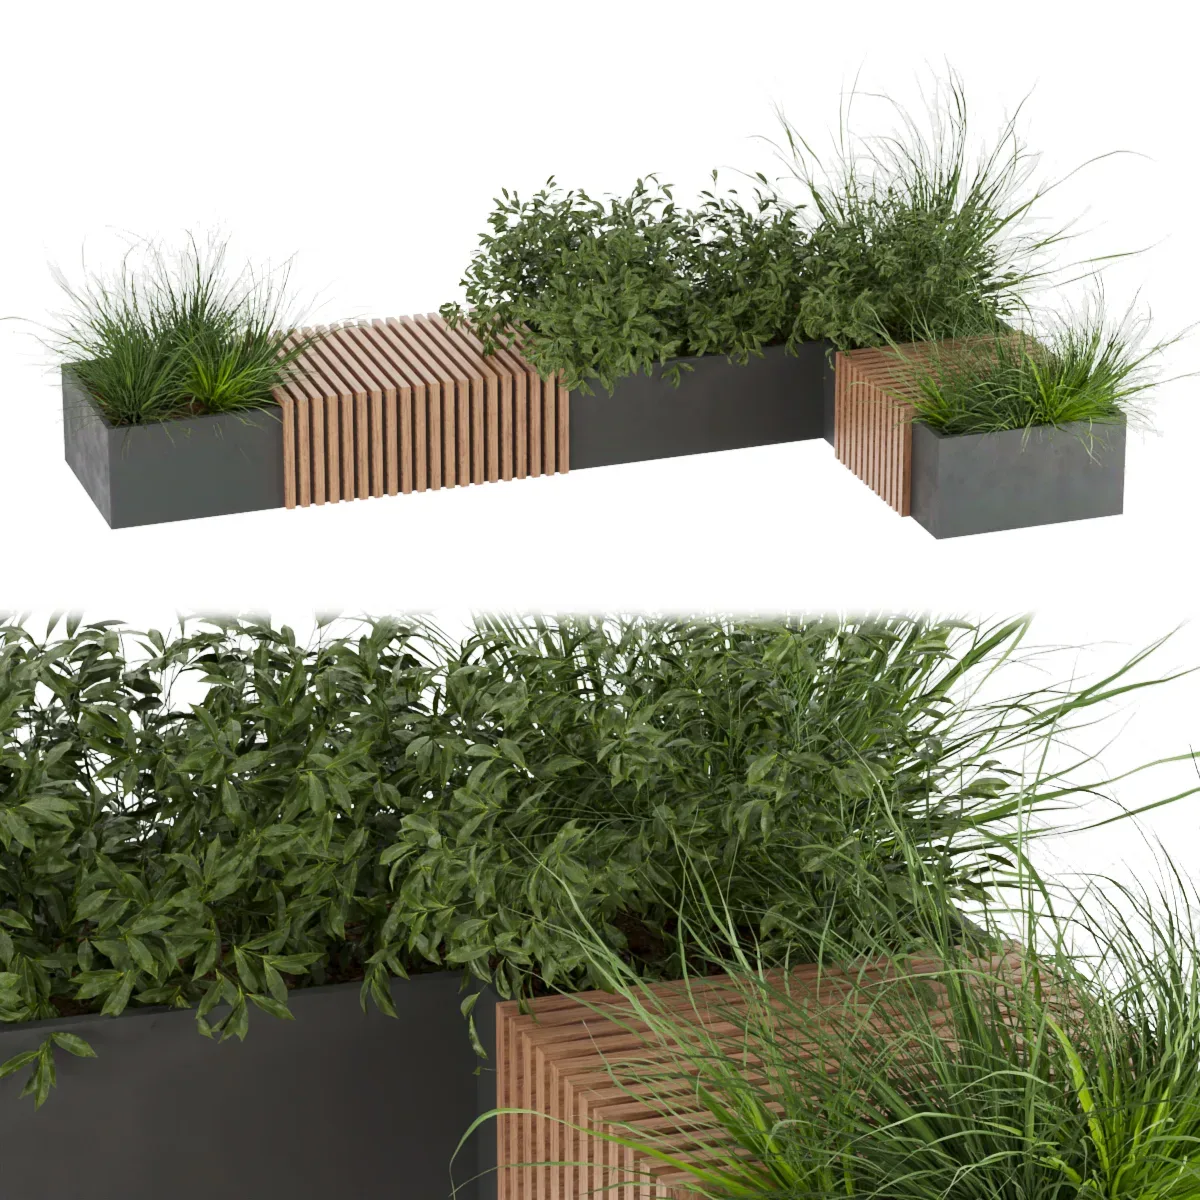 Collection plant vol 224 - leaf - bench - grass - blender - 3dmax - cinema 4d